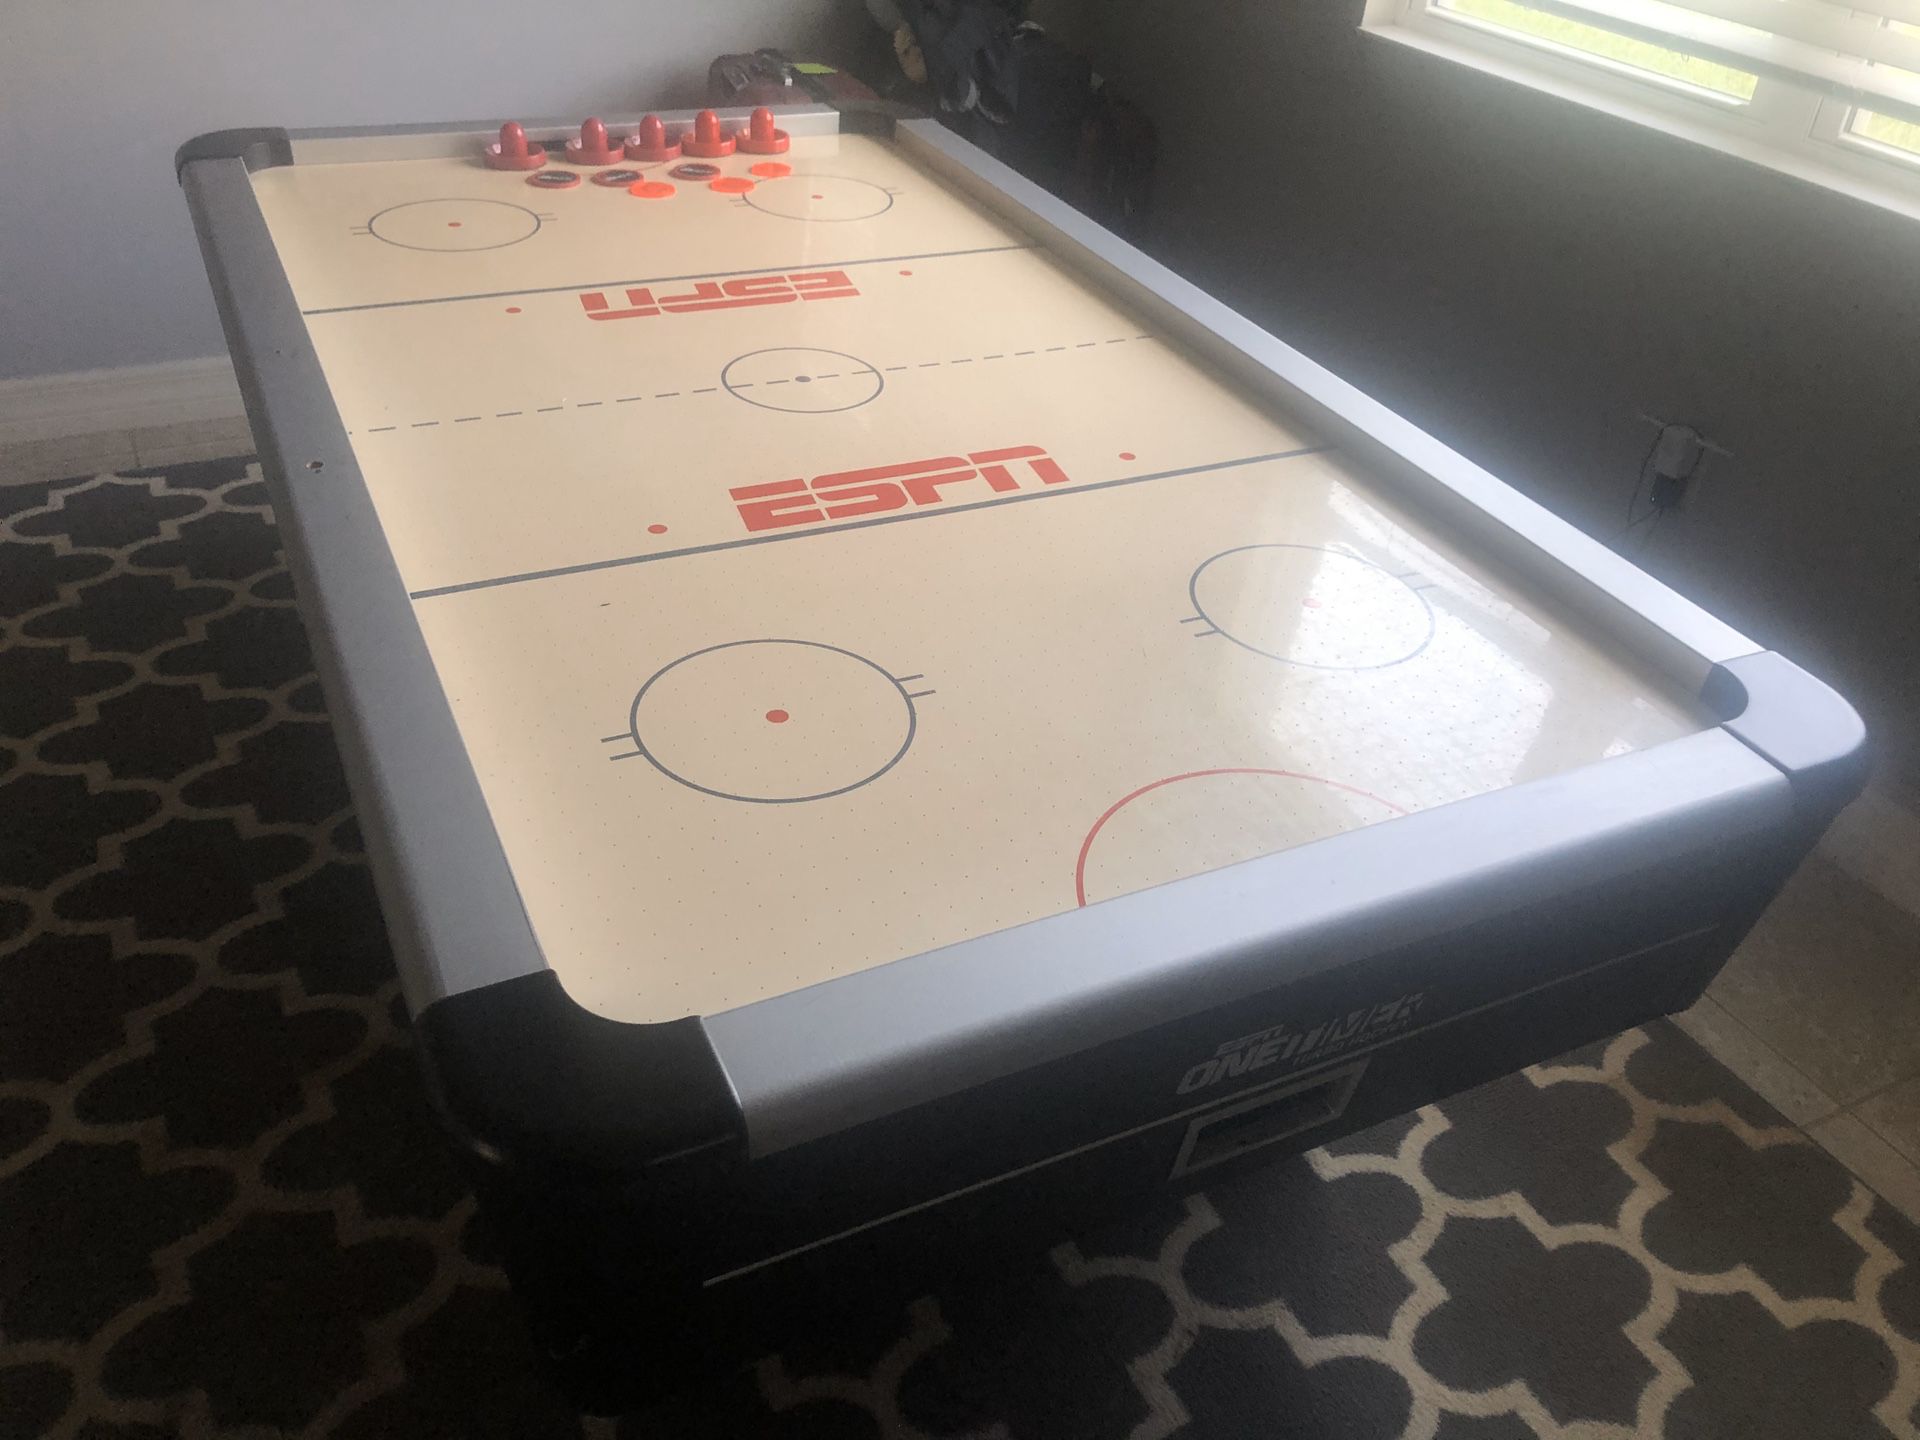 Espn air hockey table